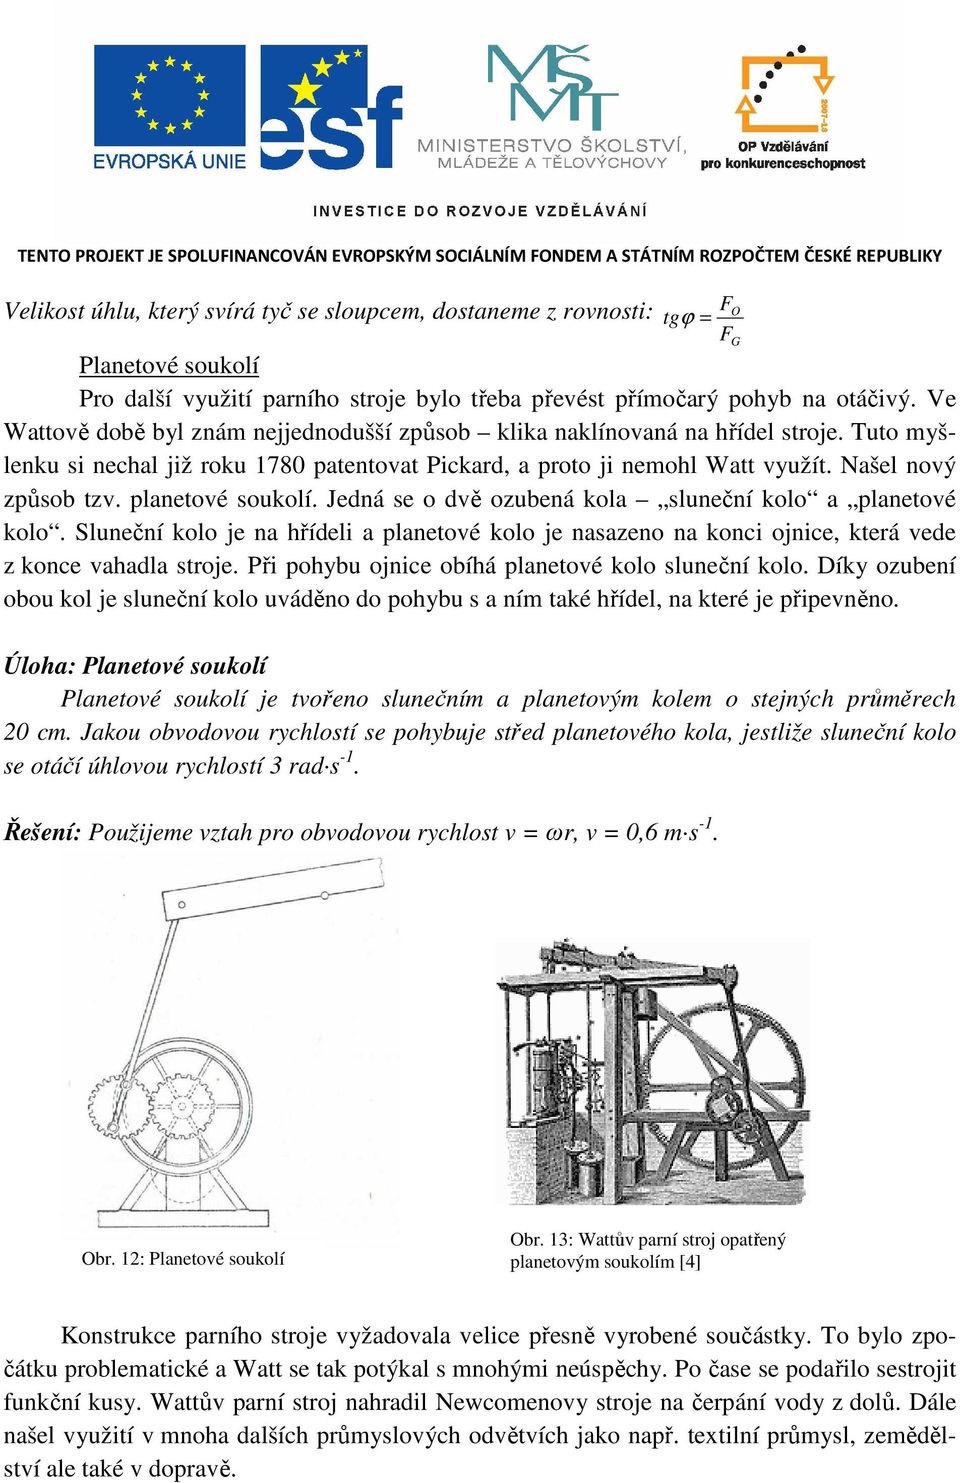 Tuto myšlenku si nechal již roku 780 patentovat Pickard, a proto ji nemohl Watt využít. Našel nový způsob tzv. planetové soukolí. Jedná se o dvě ozubená kola sluneční kolo a planetové kolo.